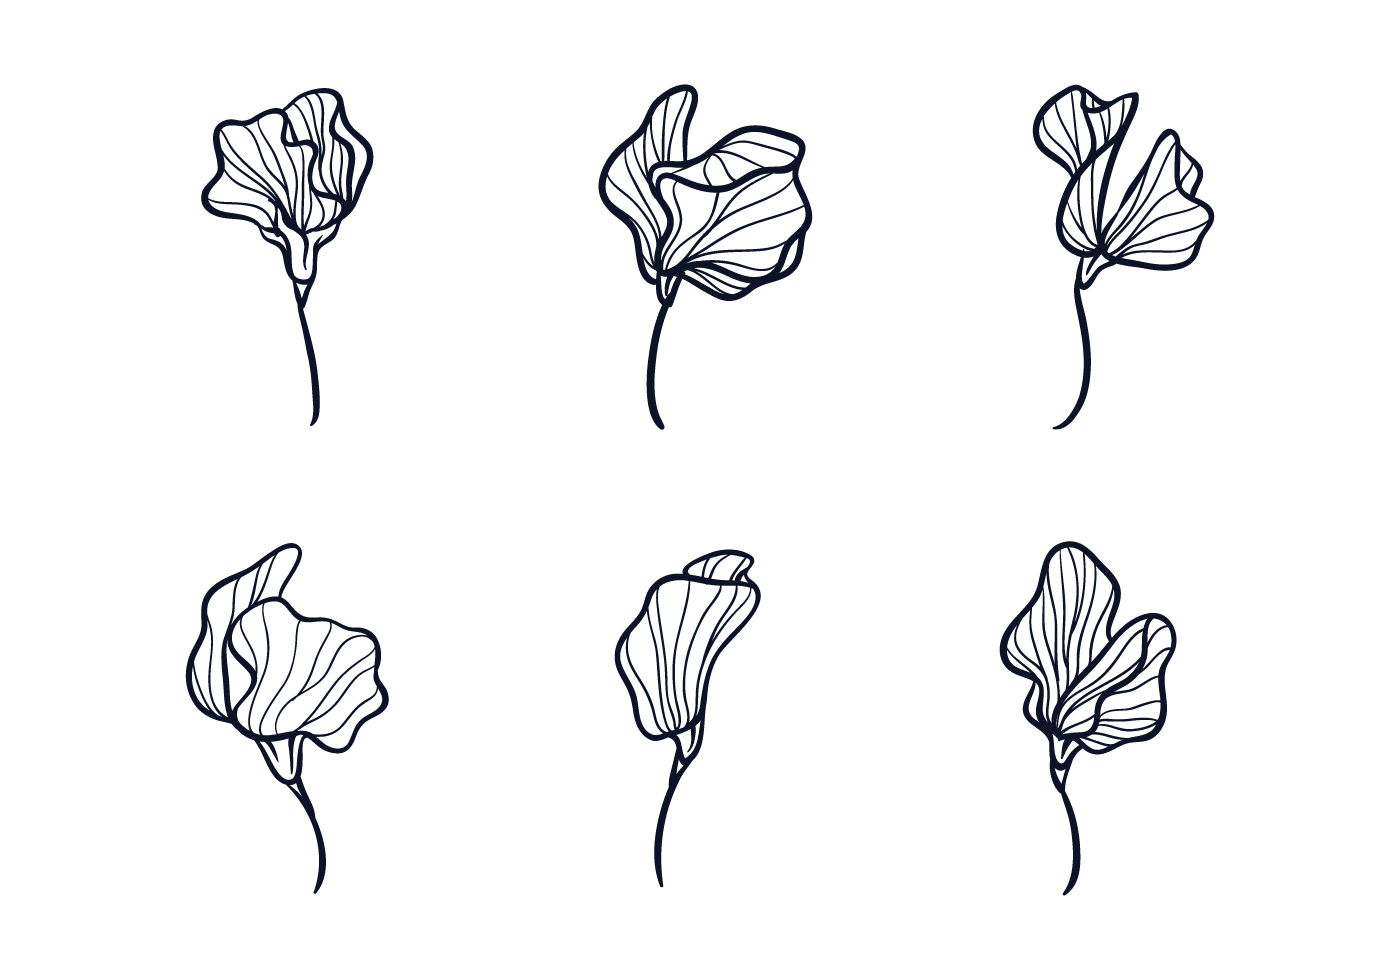 Sweet Pea Flower Sketch Download Free Vectors Clipart Graphics Vector Art